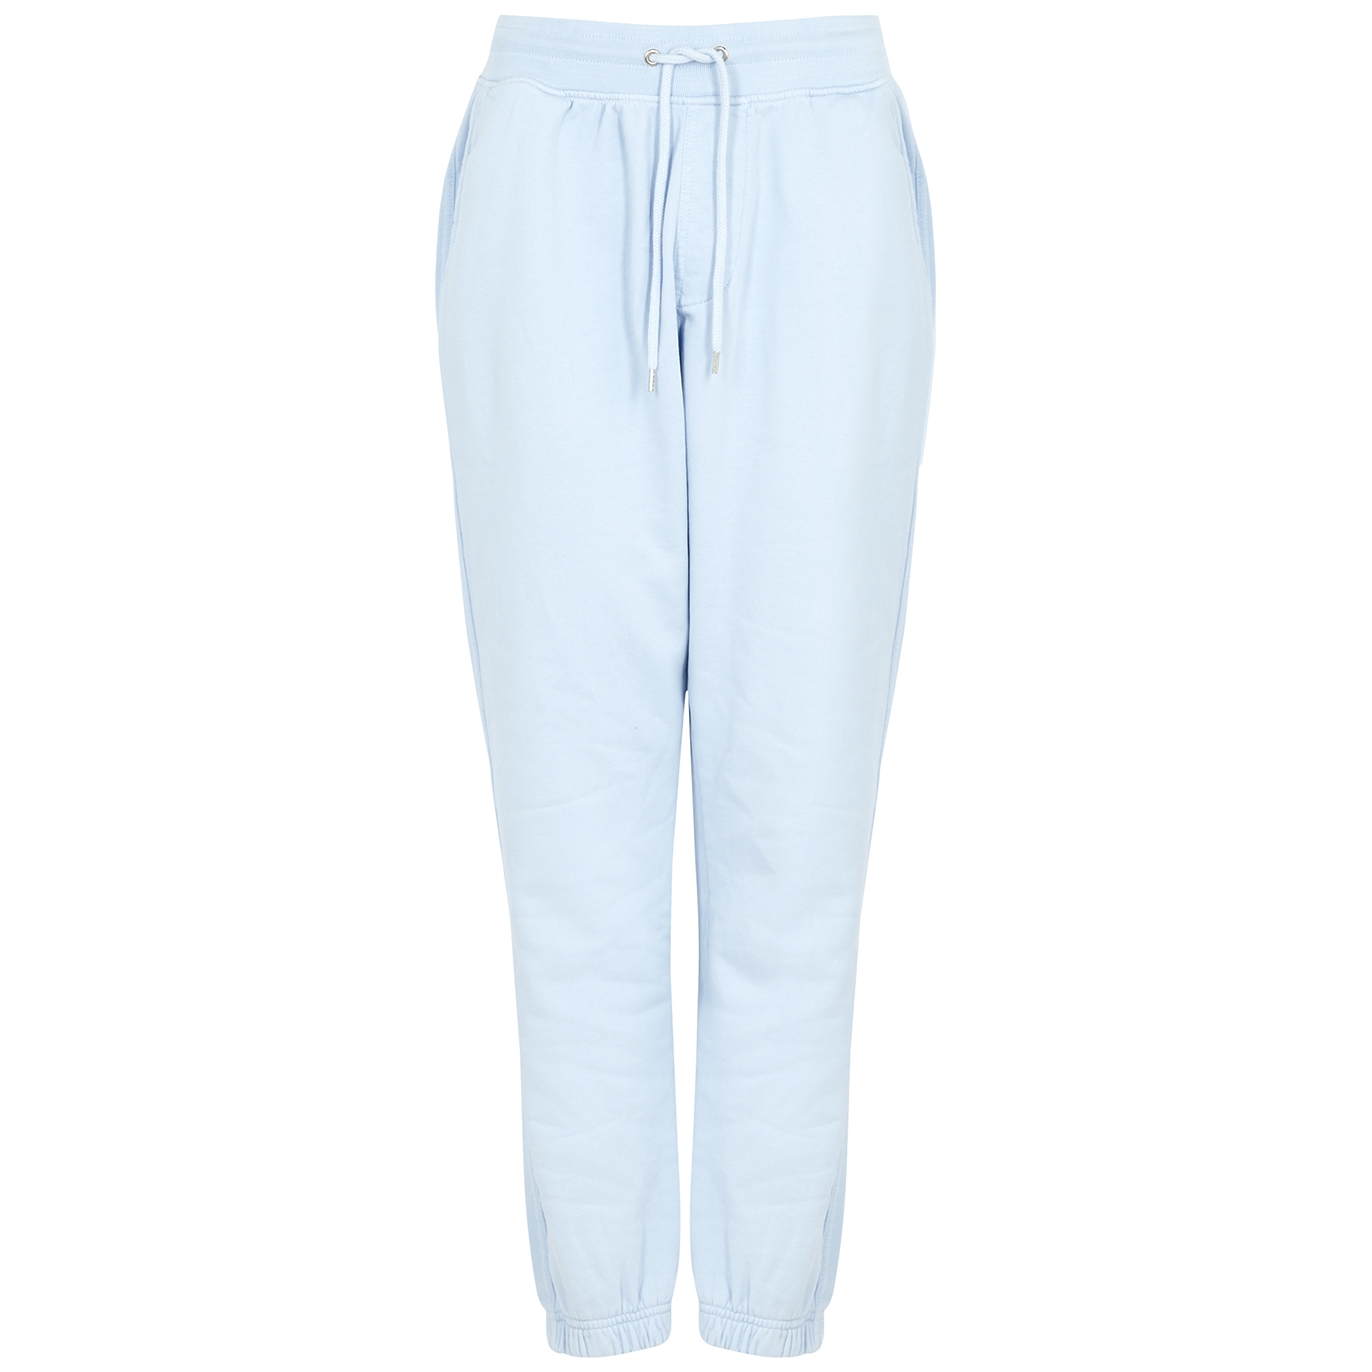 Colorful Standard Light Blue Cotton Sweatpants